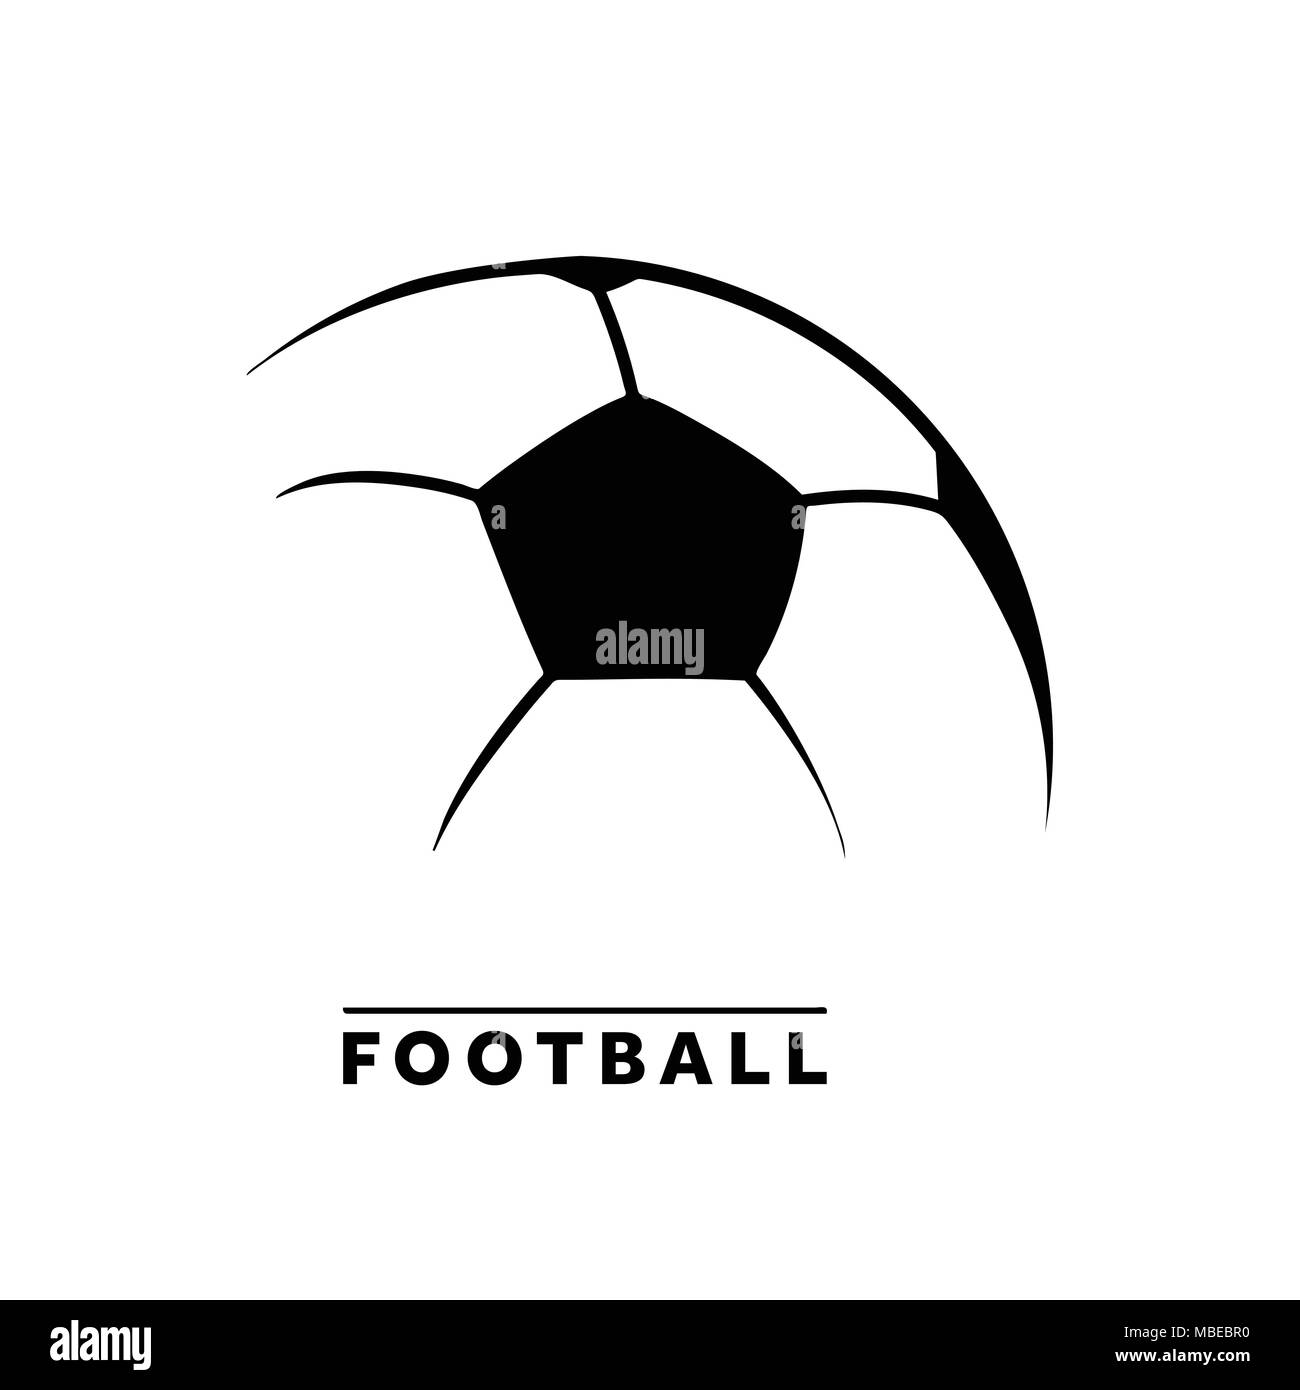 Soccer football minimal design Stock Vector